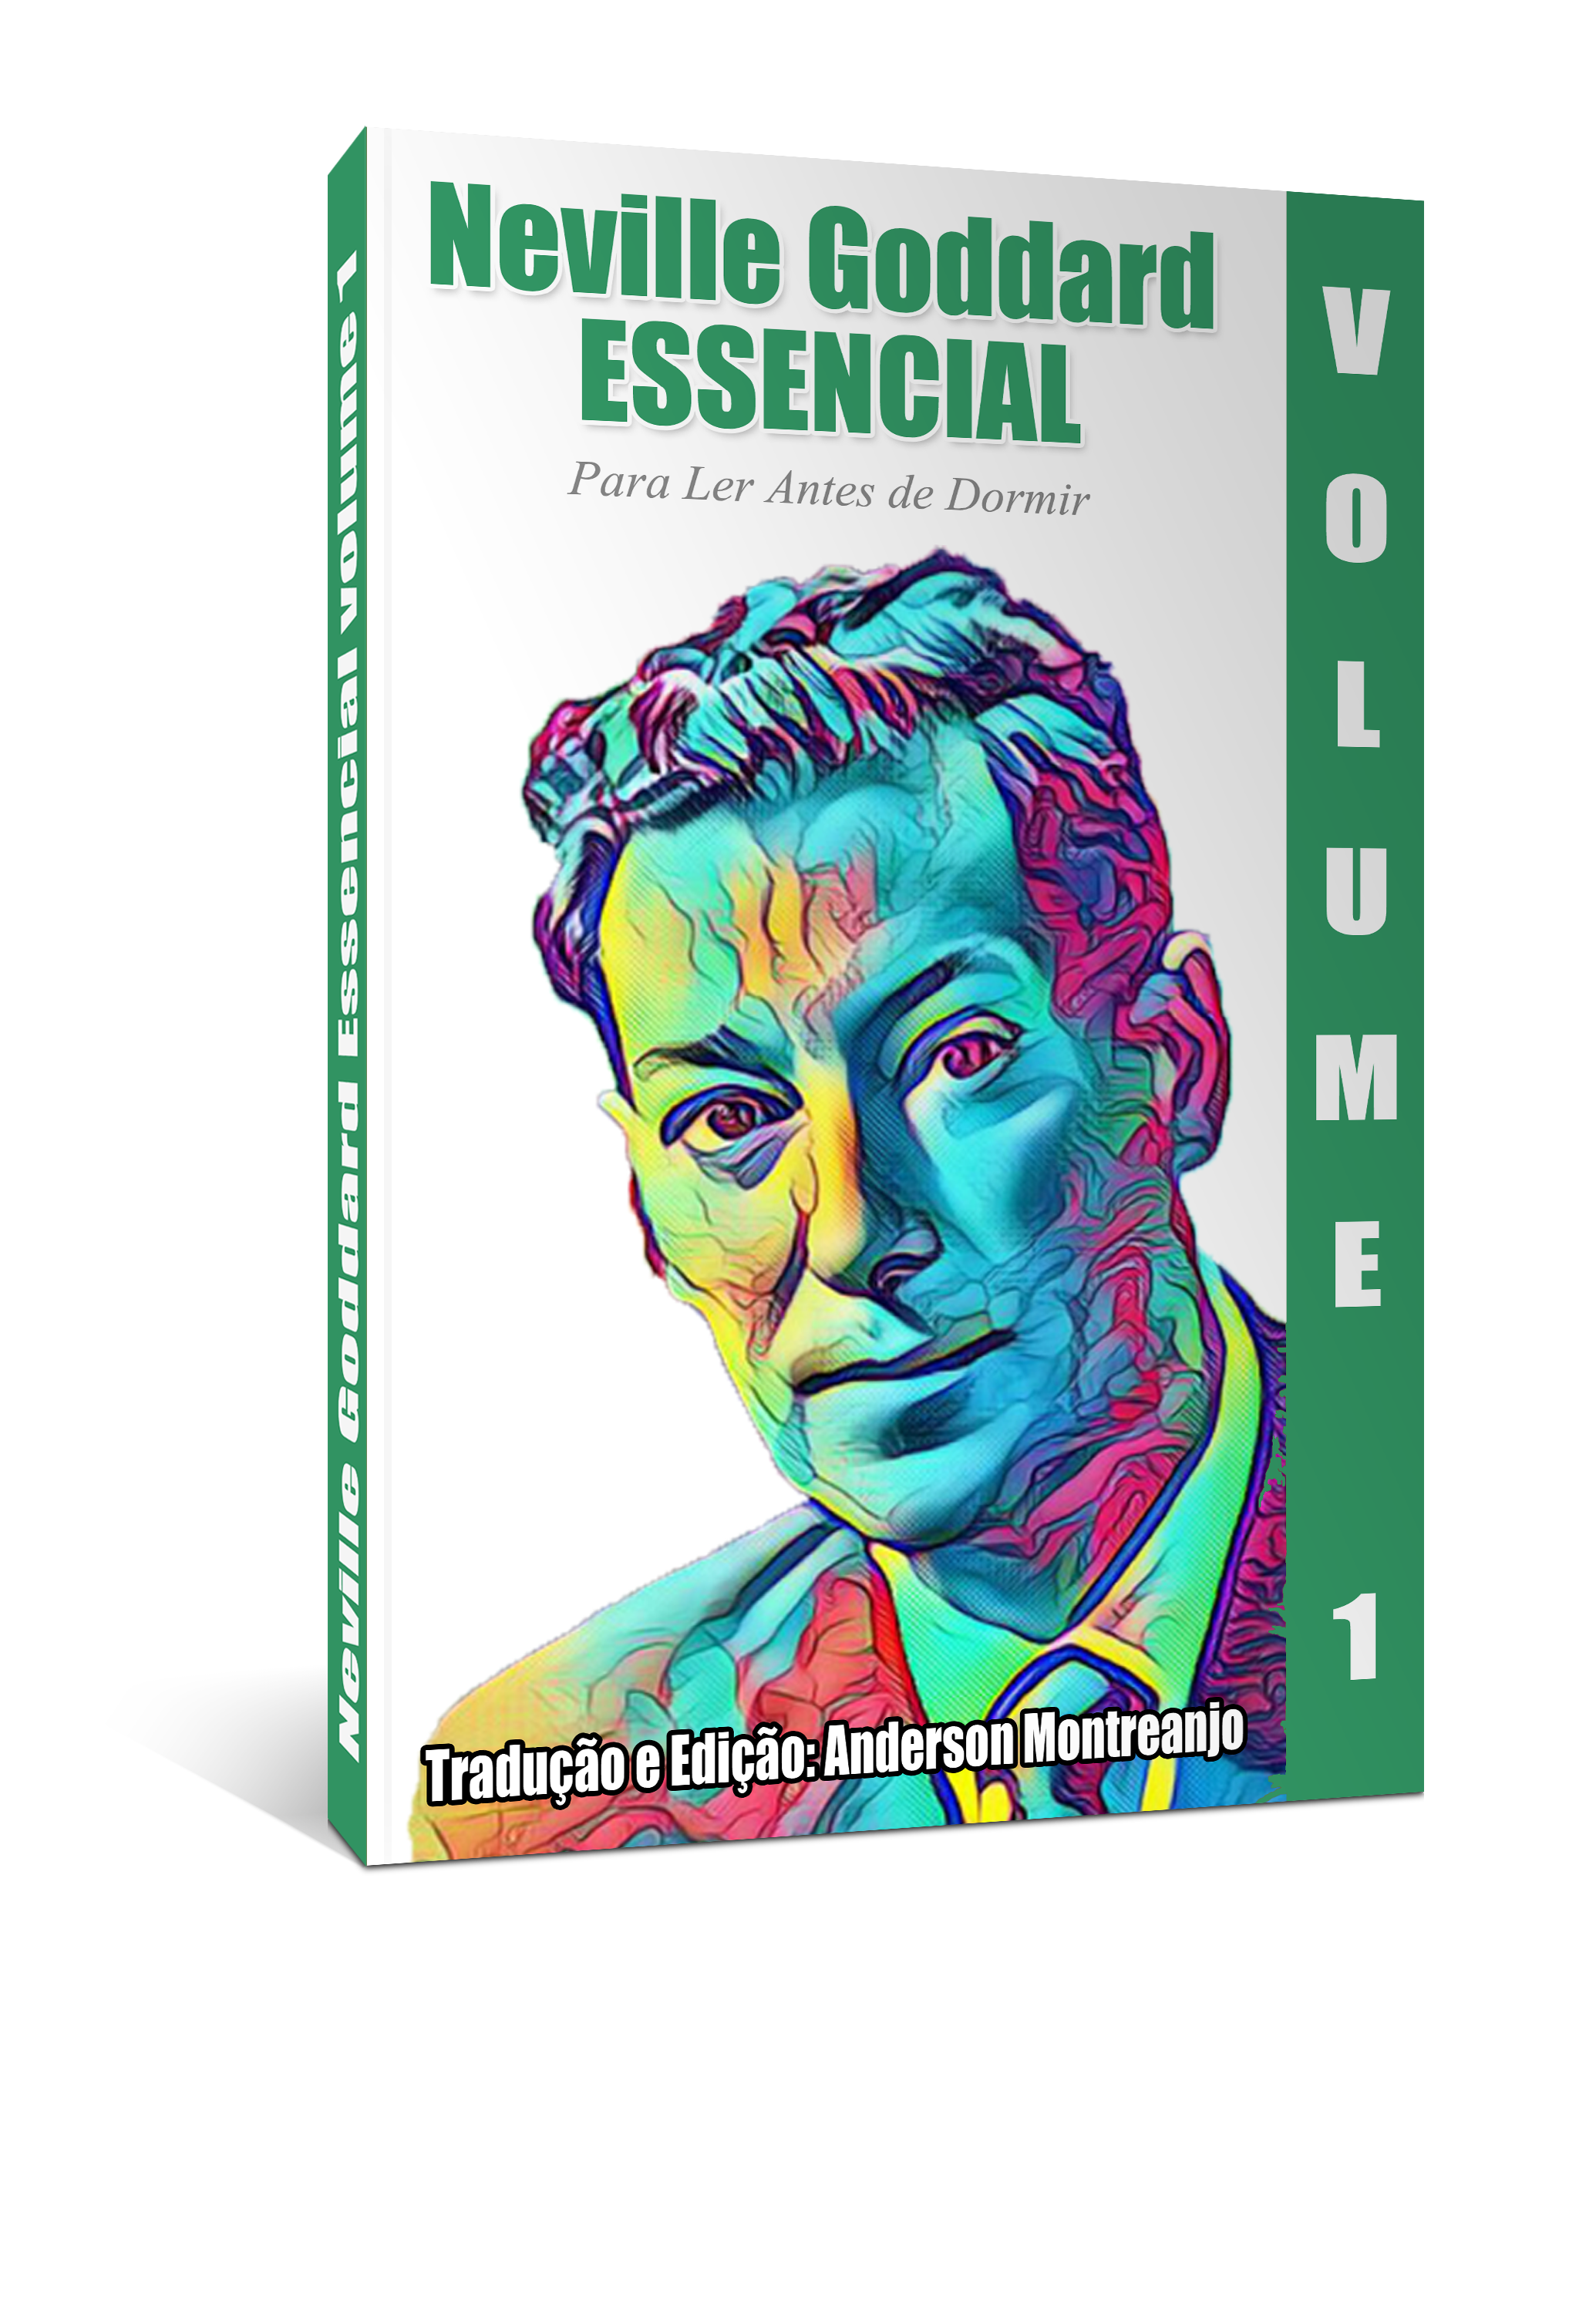 capa do Neville Essencial novo modelo1 3D - Download do ebook Neville Essencial 1 COD.1027